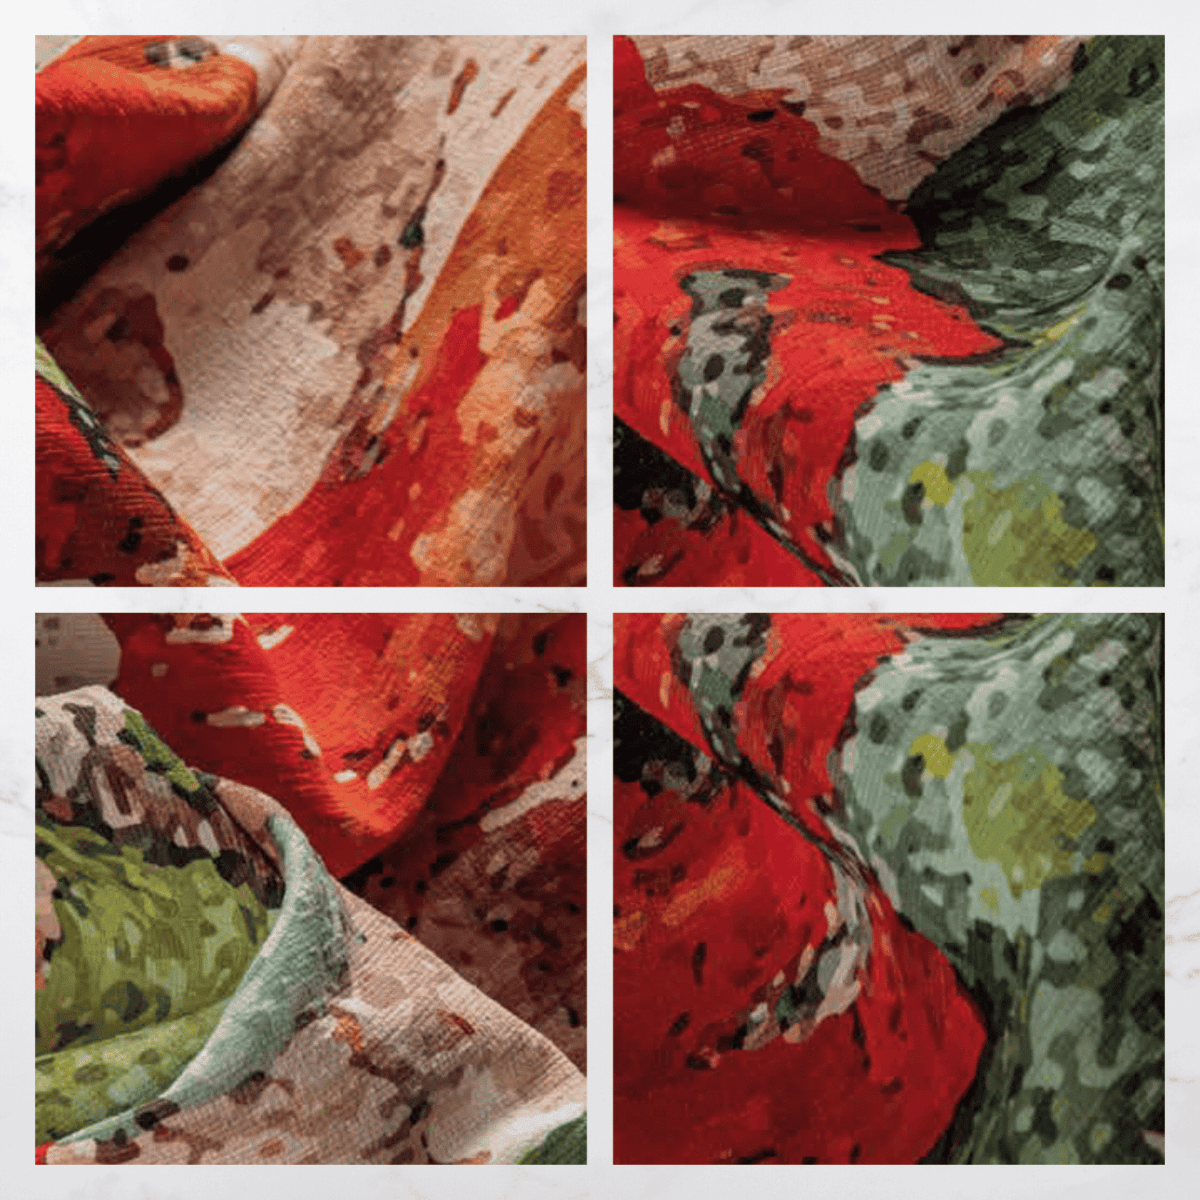 signac-tappeto-arredo-emozioni-artista-pennellate-multicolor-campestre-impressionismo-francese-pointillisme-dettagli